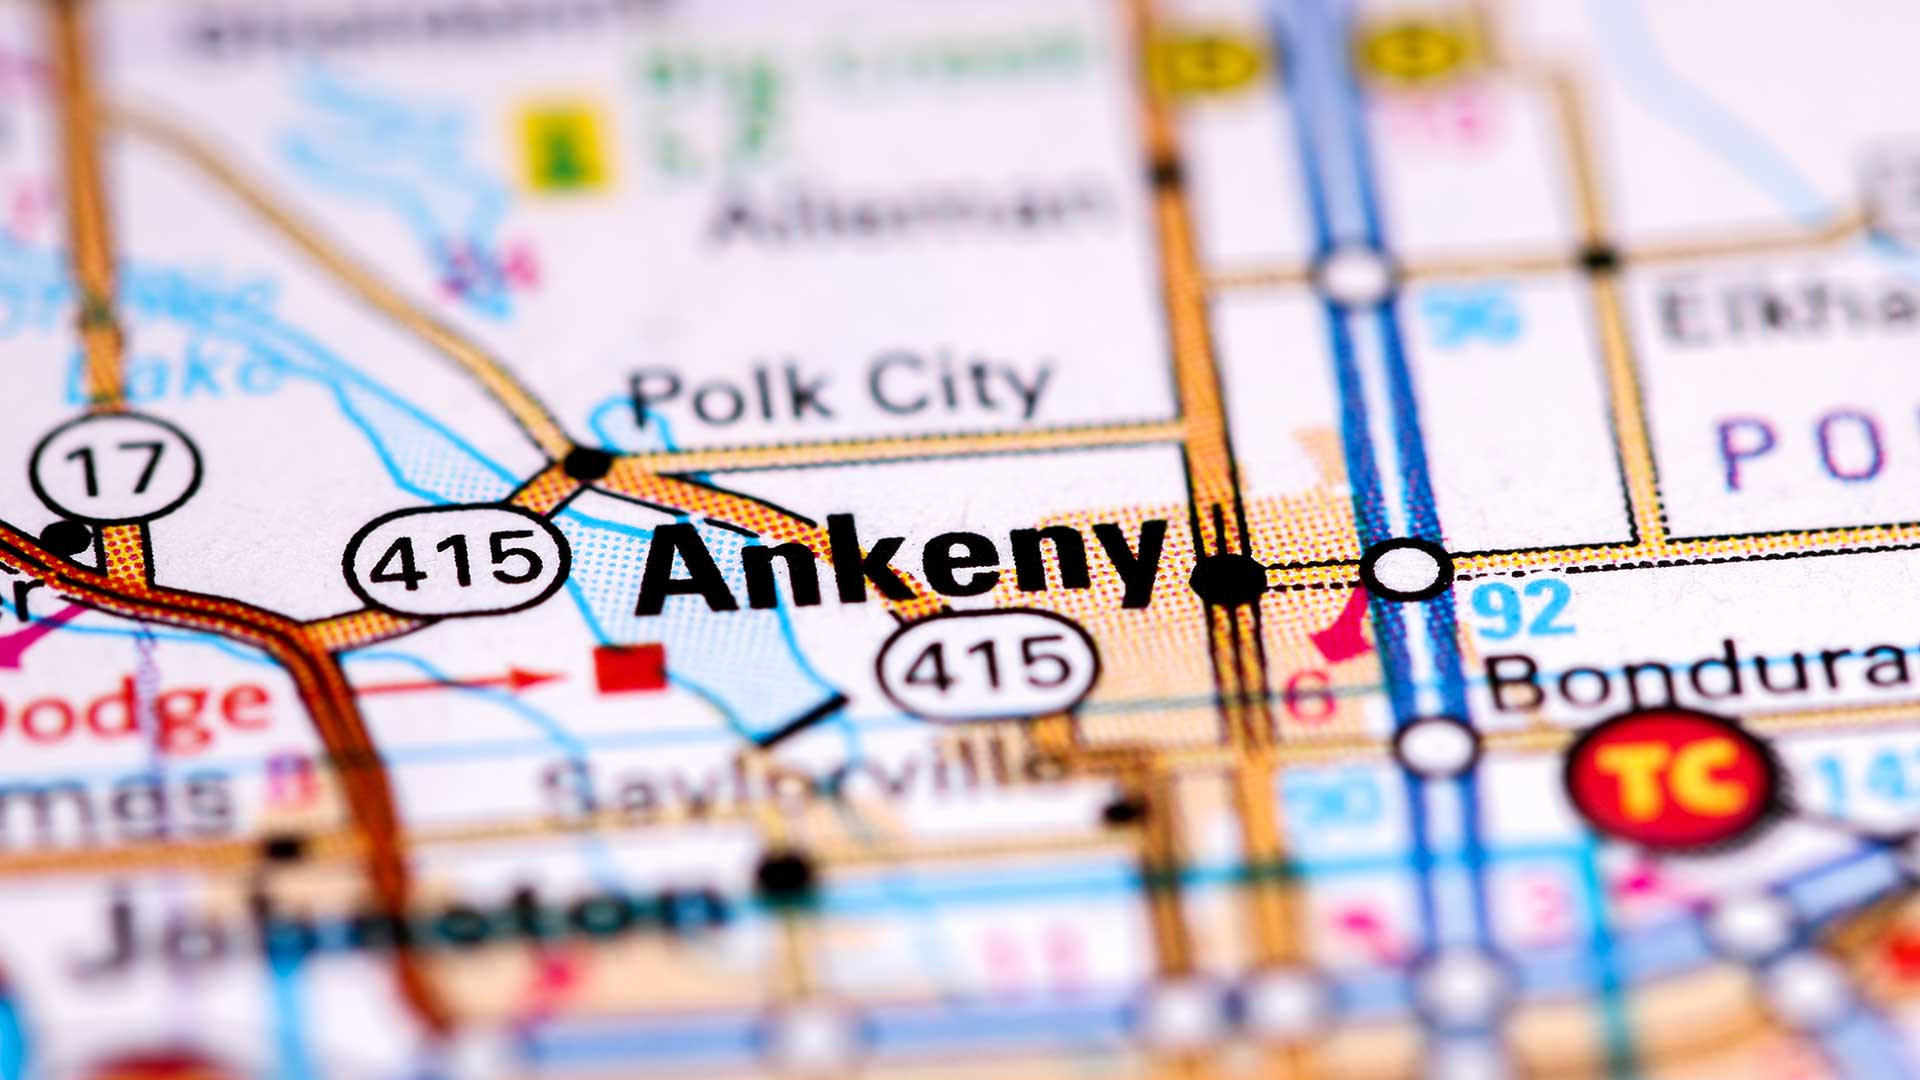 Ankeny, IA close up on a map.